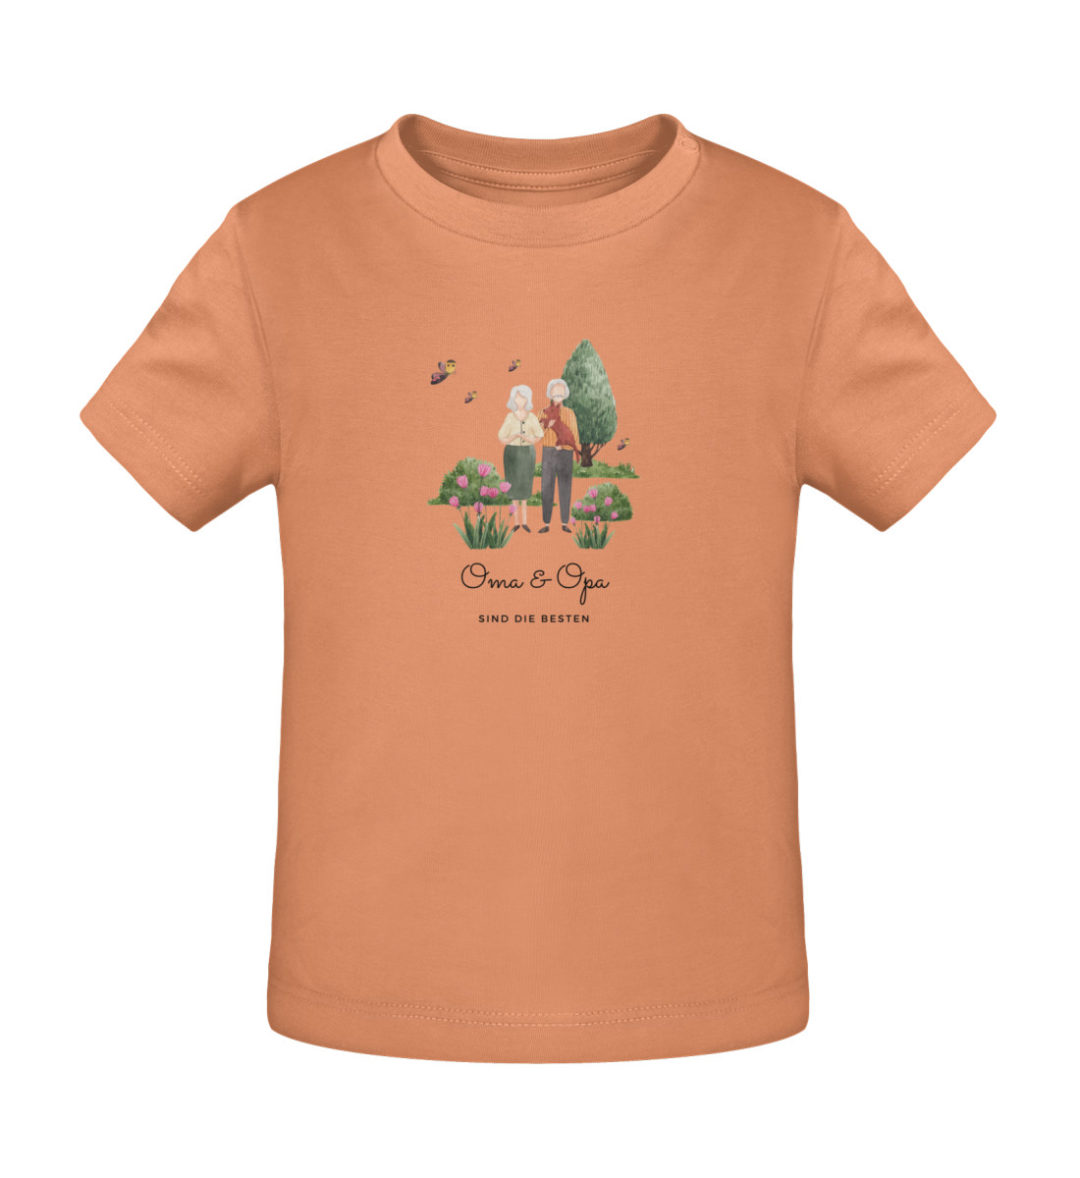 Oma & Opa sind die besten - Baby Creator T-Shirt ST/ST-7101